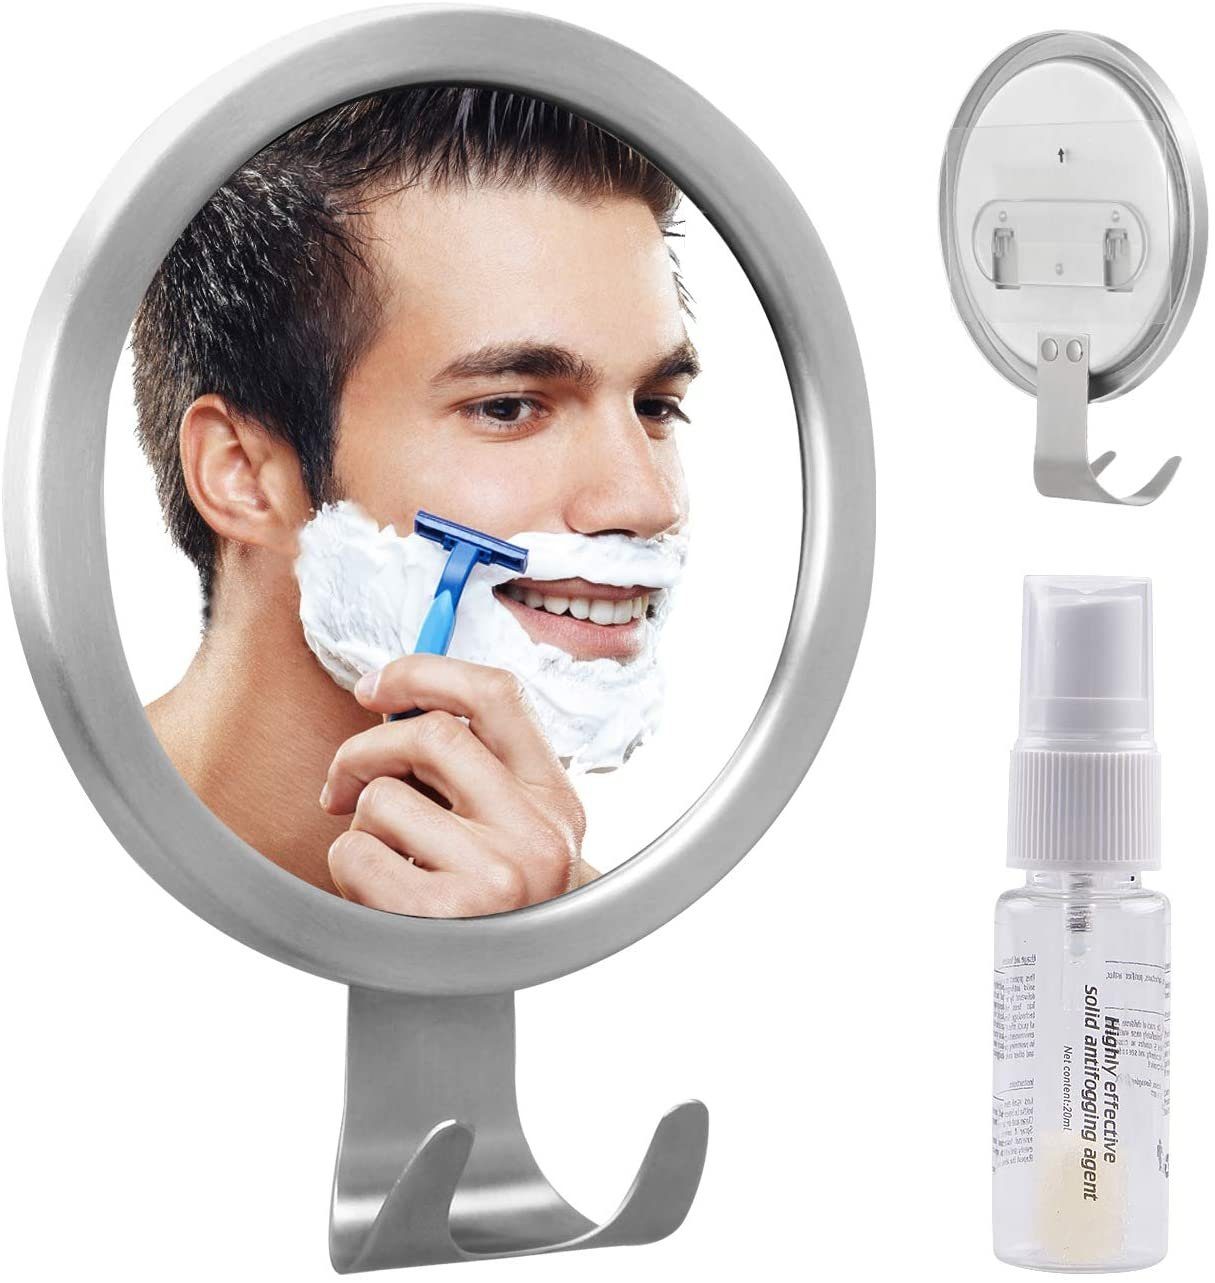 OHNE Kosmetikspiegel GlobaLink Kosmetikspiegel Bohren Antibeschlag